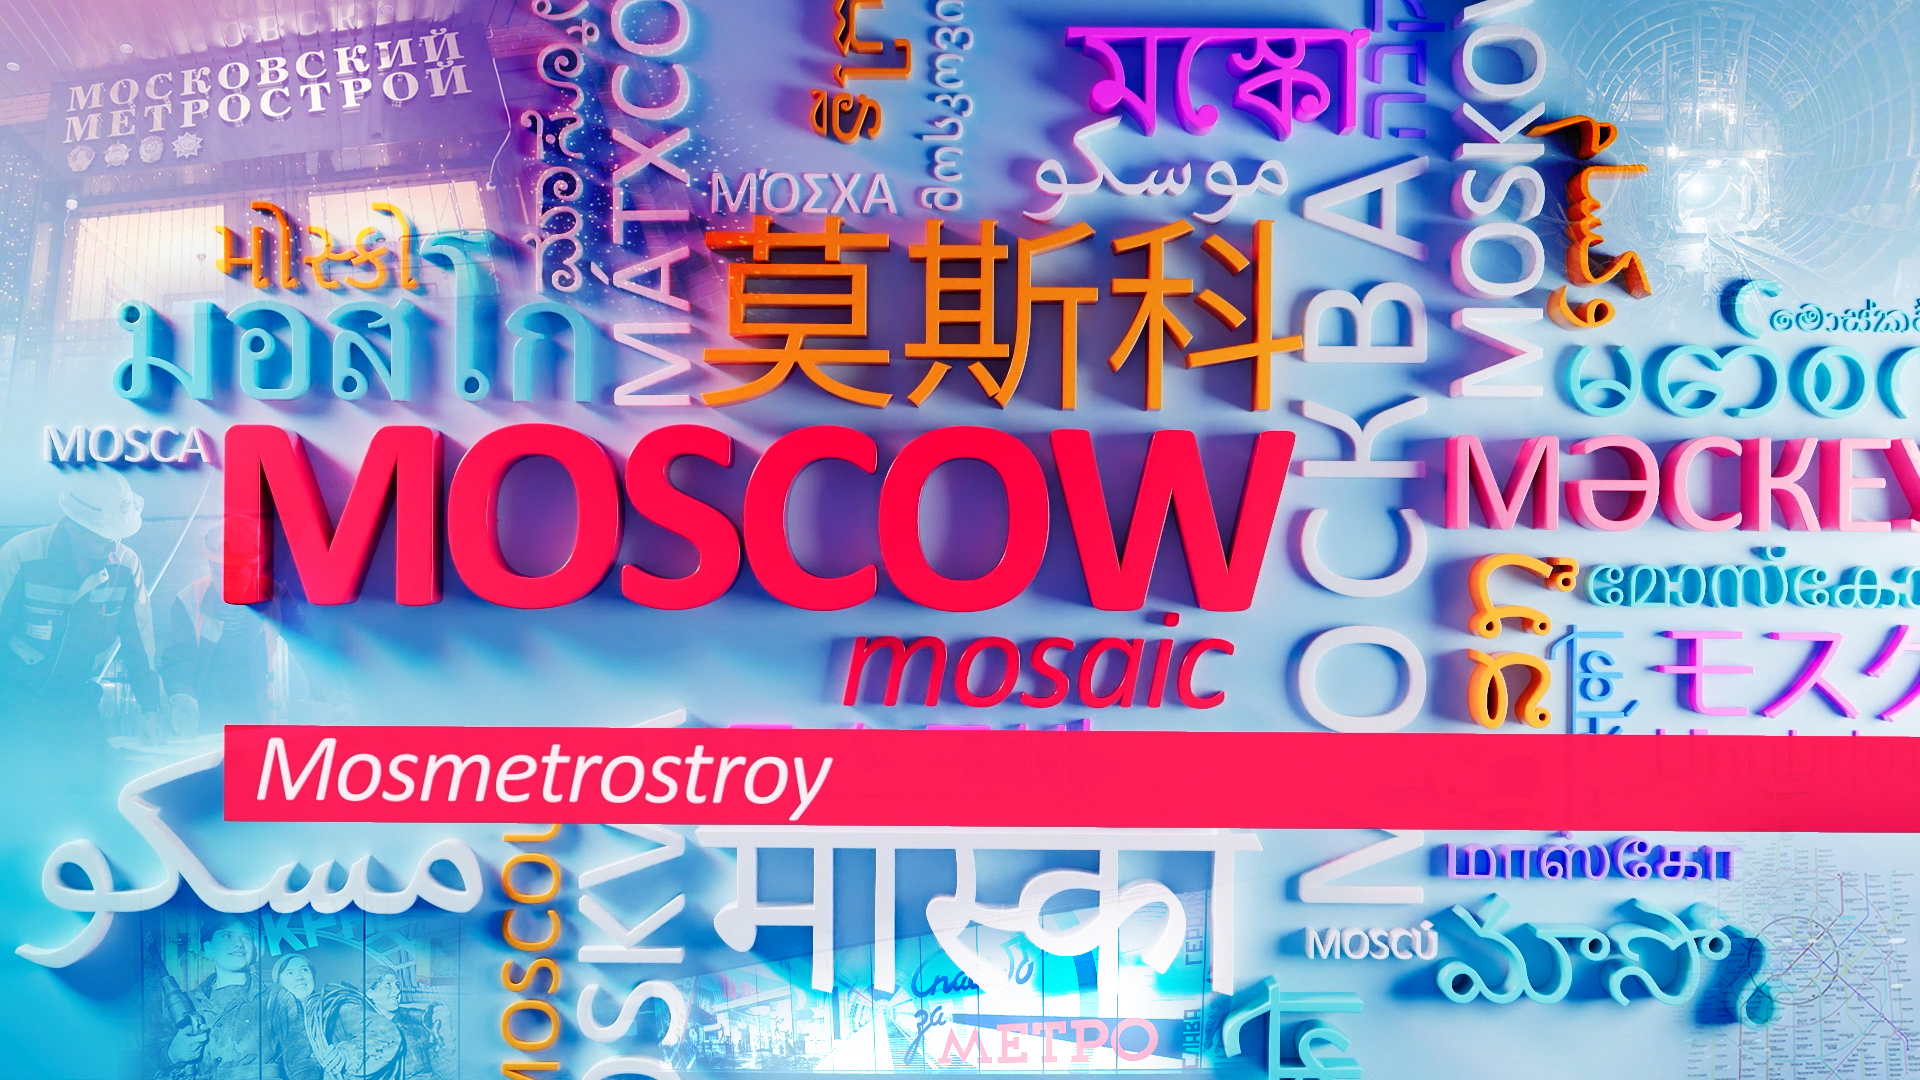 "Moscow Mosaic" - MOSMETROSTROY